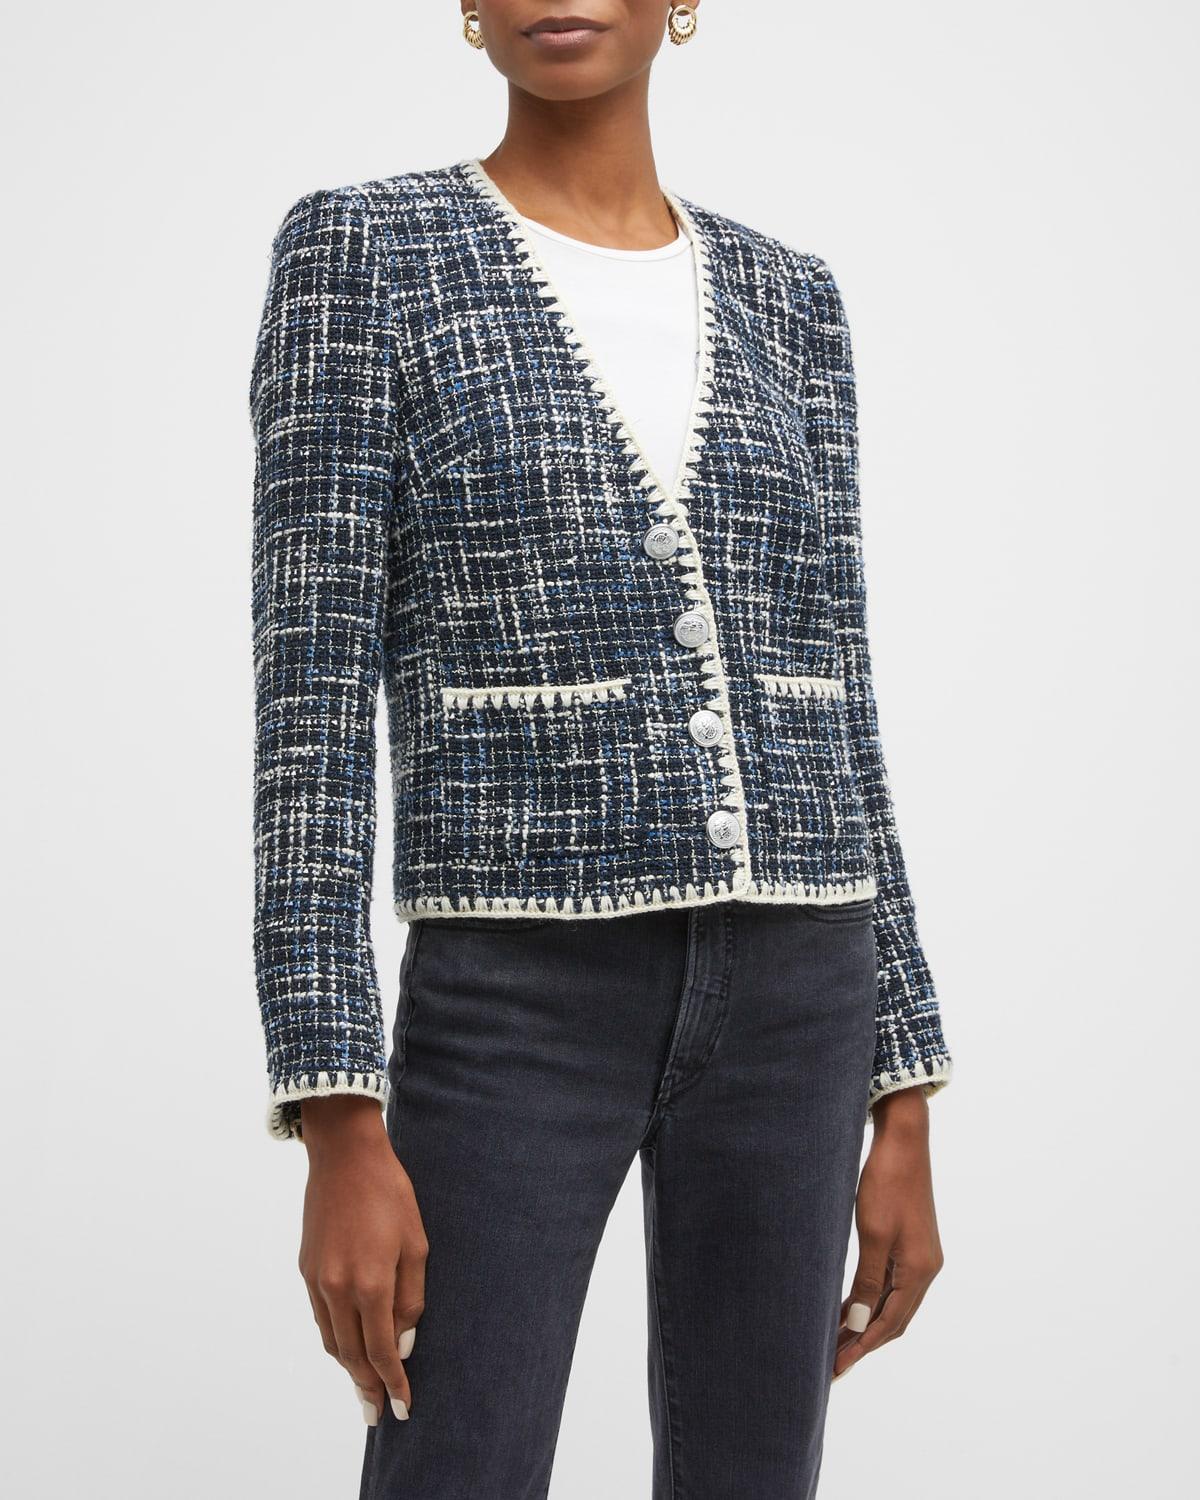 Womens Bosea Tweed Jacket - Navy Multi - Size 00 - Navy Multi - Size 00 Product Image